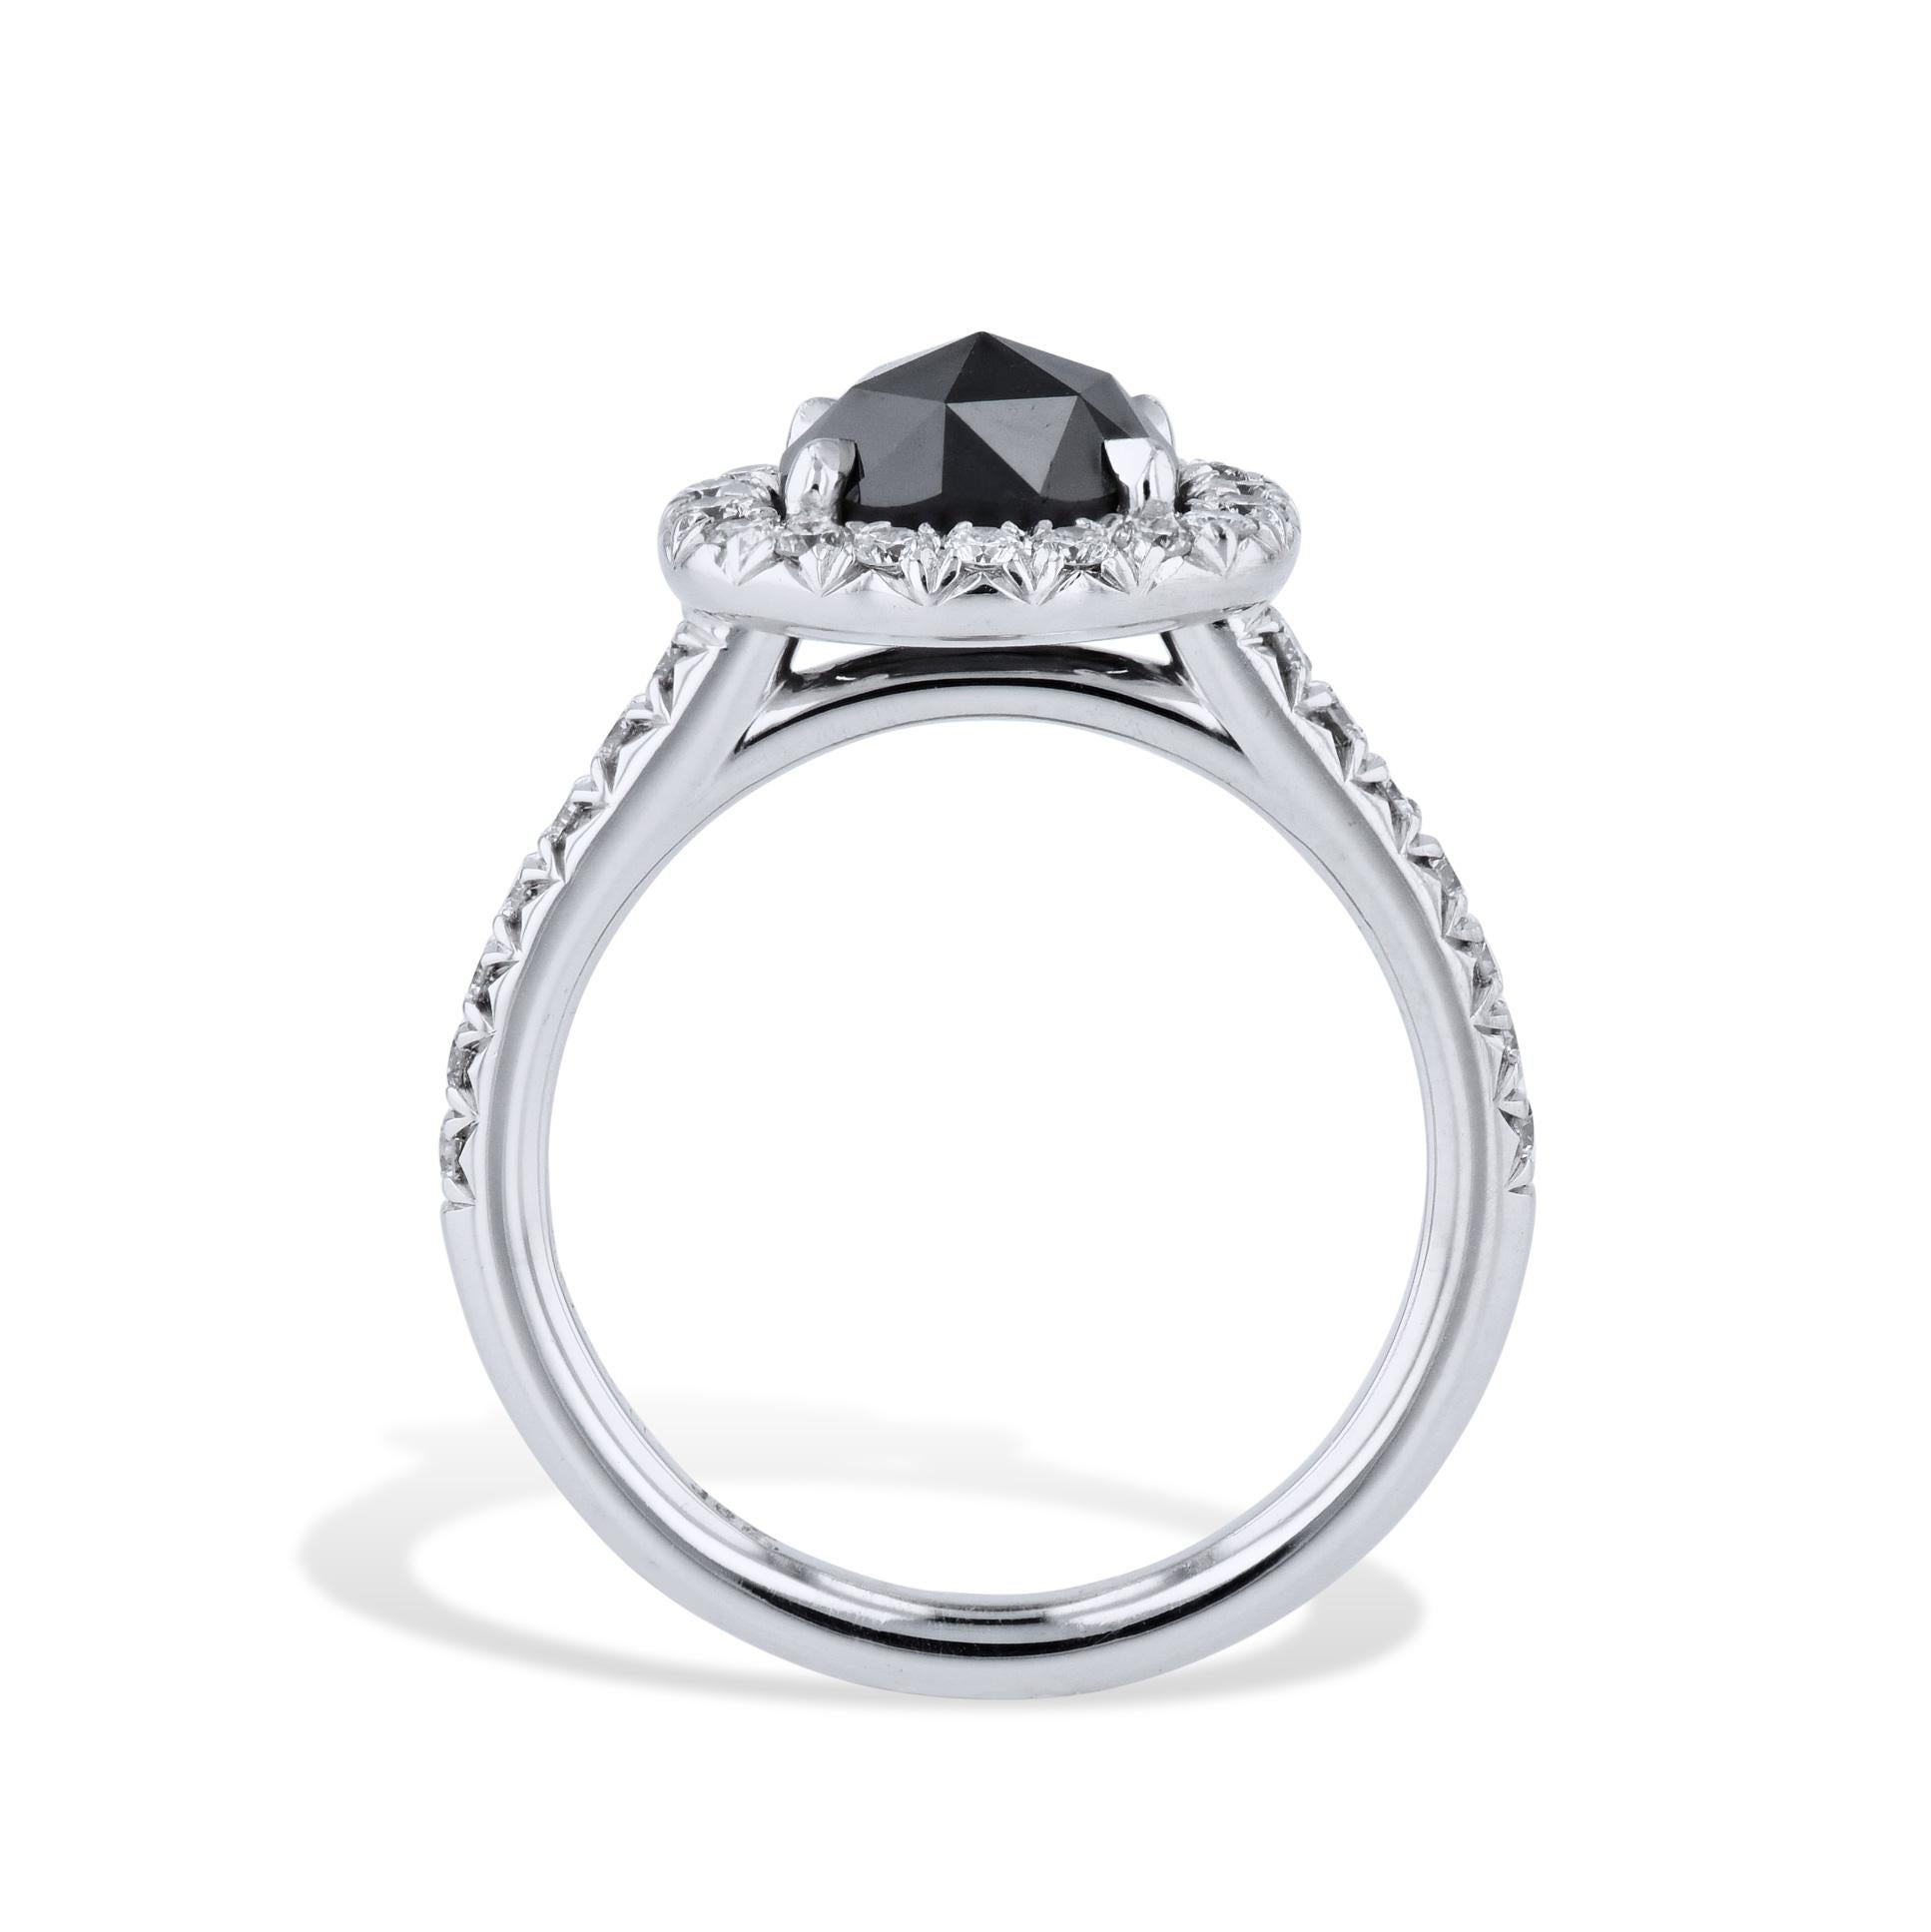 Dieser atemberaubende Ring mit schwarzen Diamanten ist aus 18 Karat Weißgold handgefertigt. Der schwarze Diamant und der Schaft sind mit Diamanten besetzt, so dass er aus jedem Blickwinkel besticht. Ein exquisites handgefertigtes Stück aus der HH